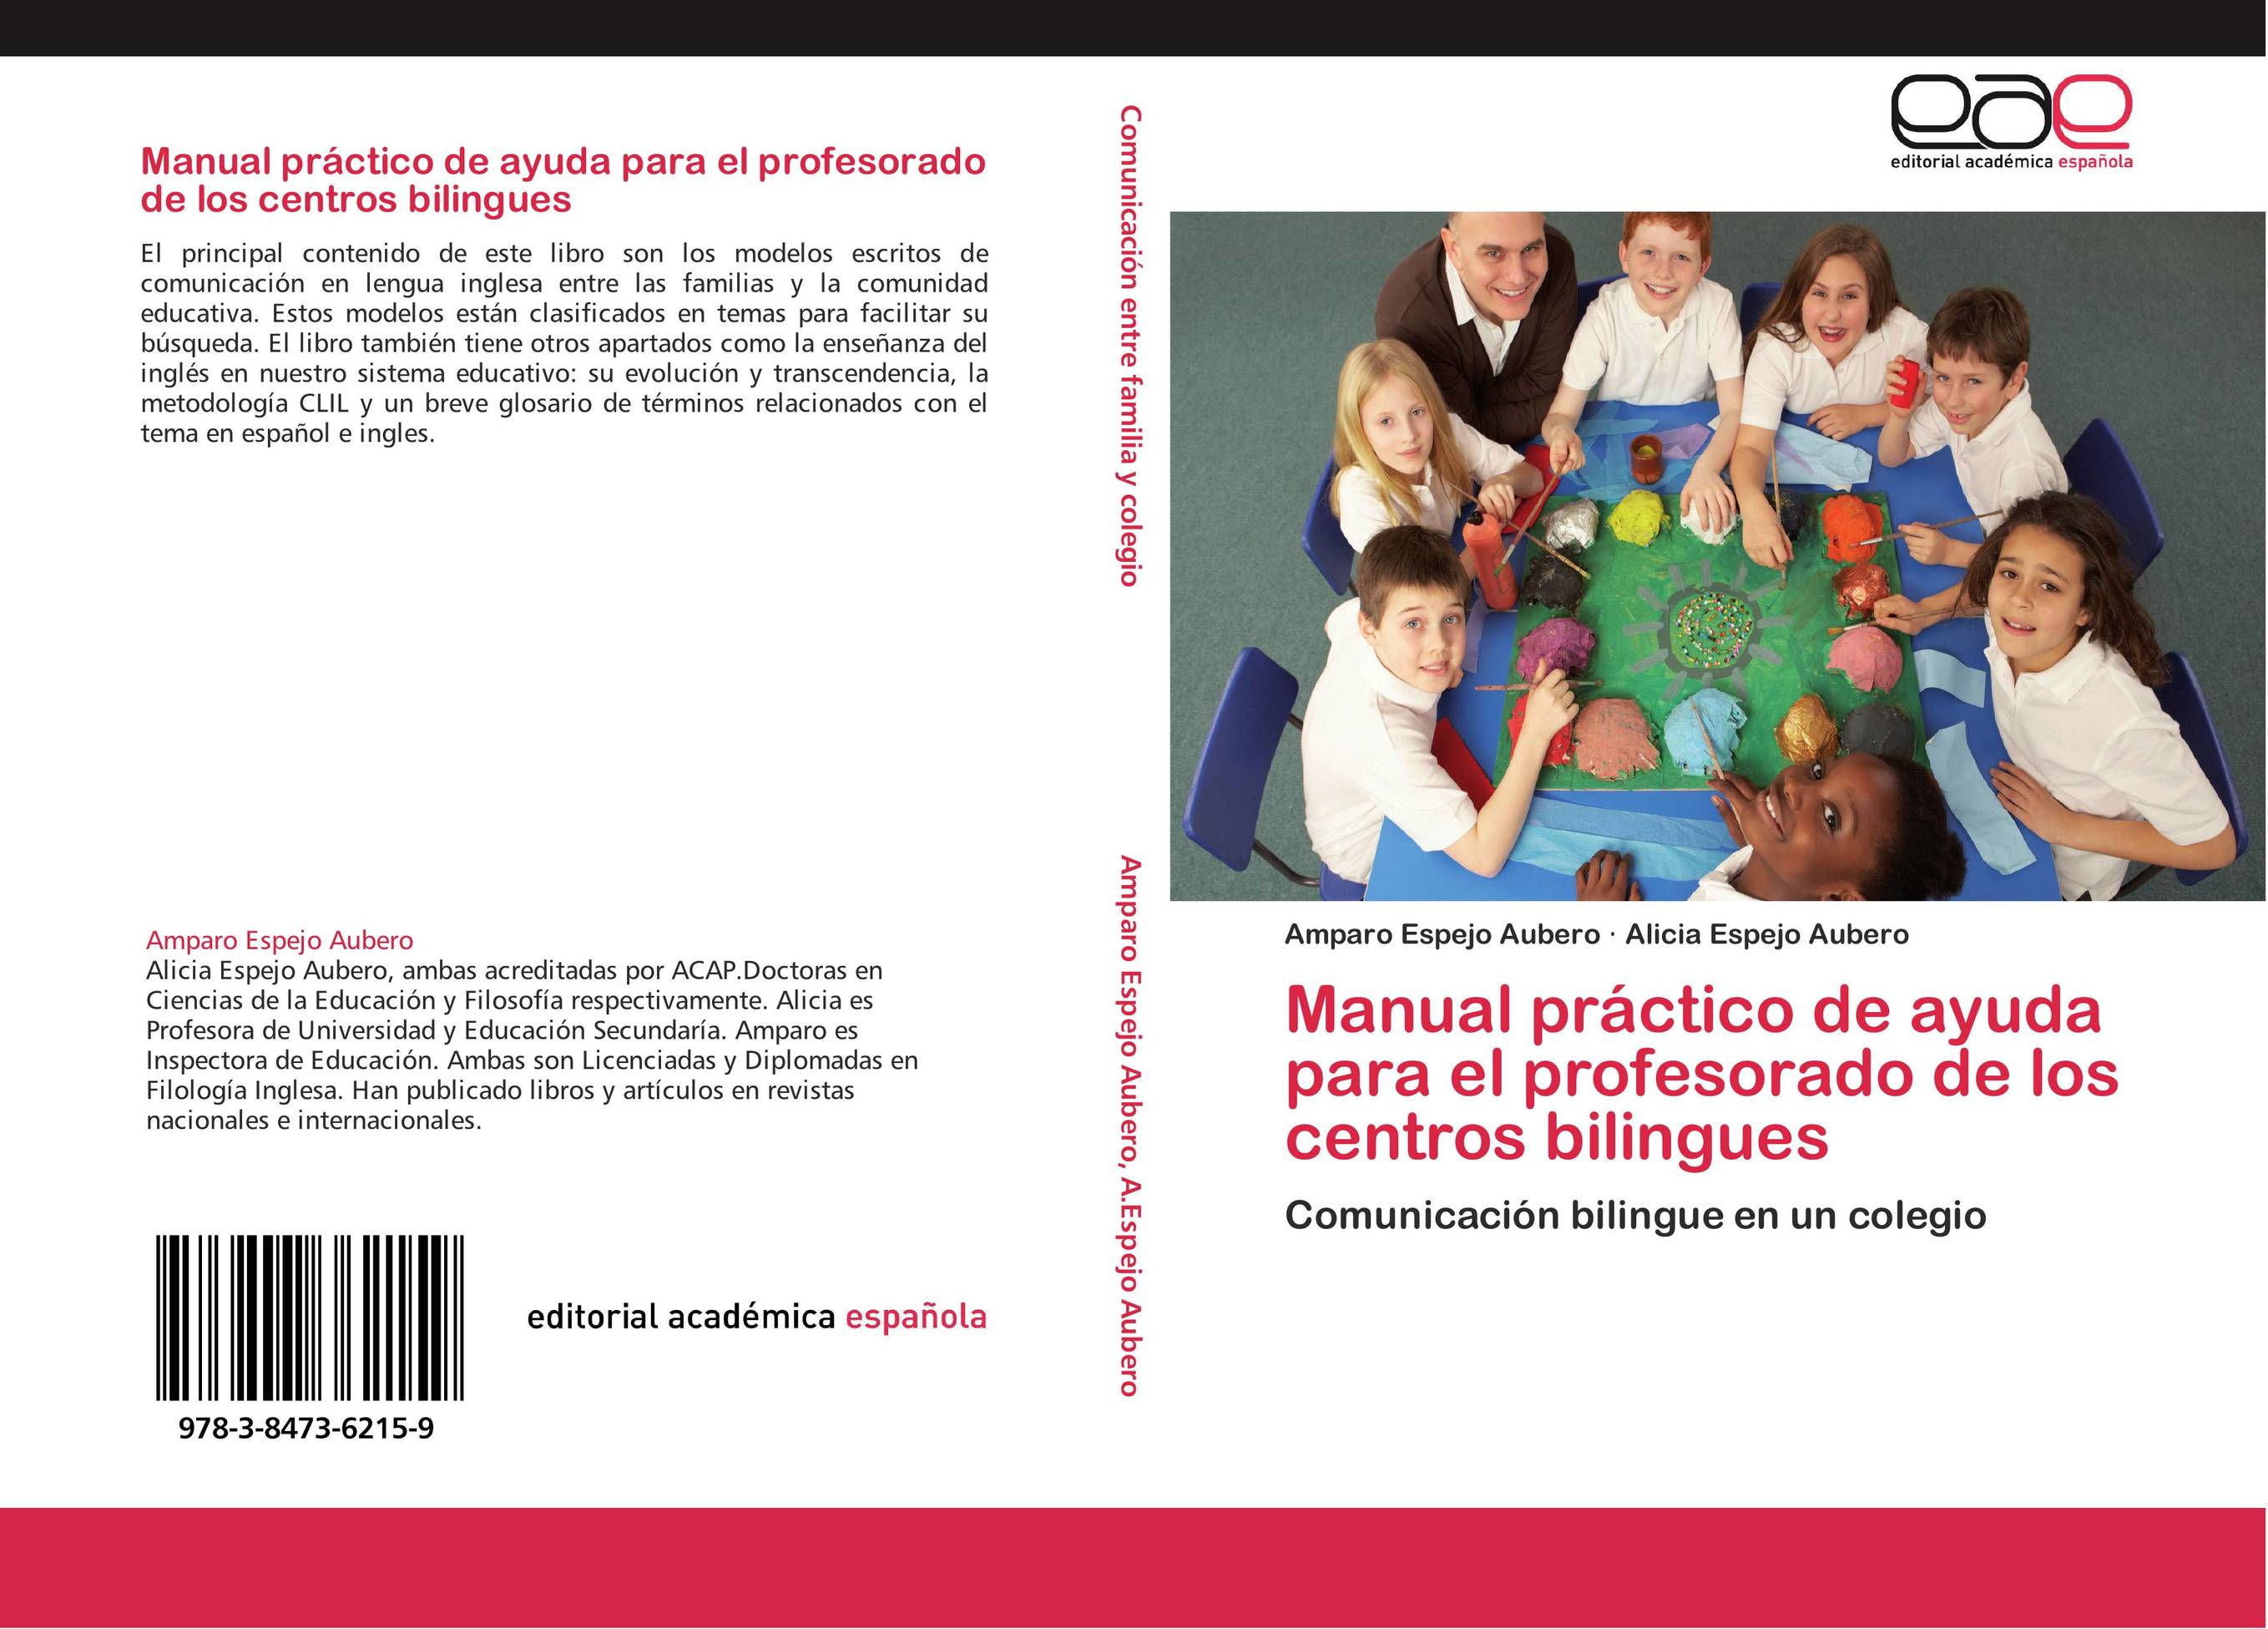 Manual práctico de ayuda para el profesorado de los centros bilingues